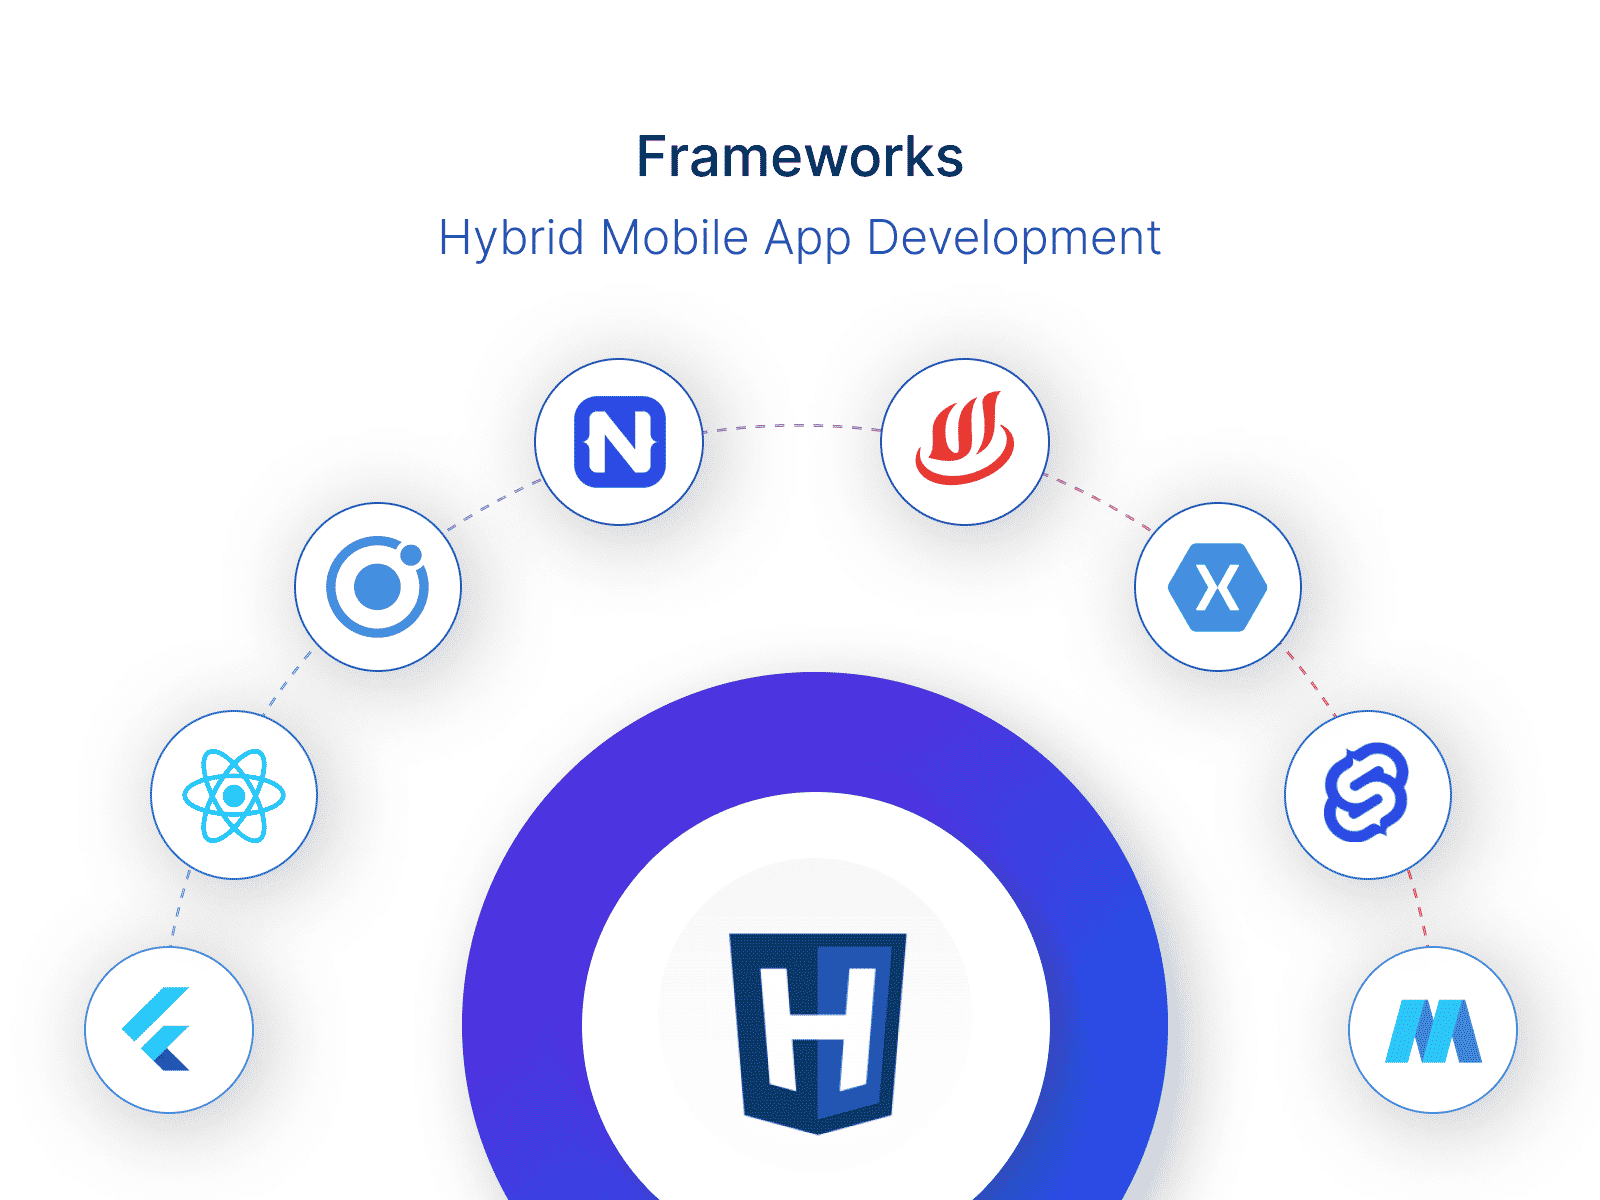 Hybrid apps: Frameworks